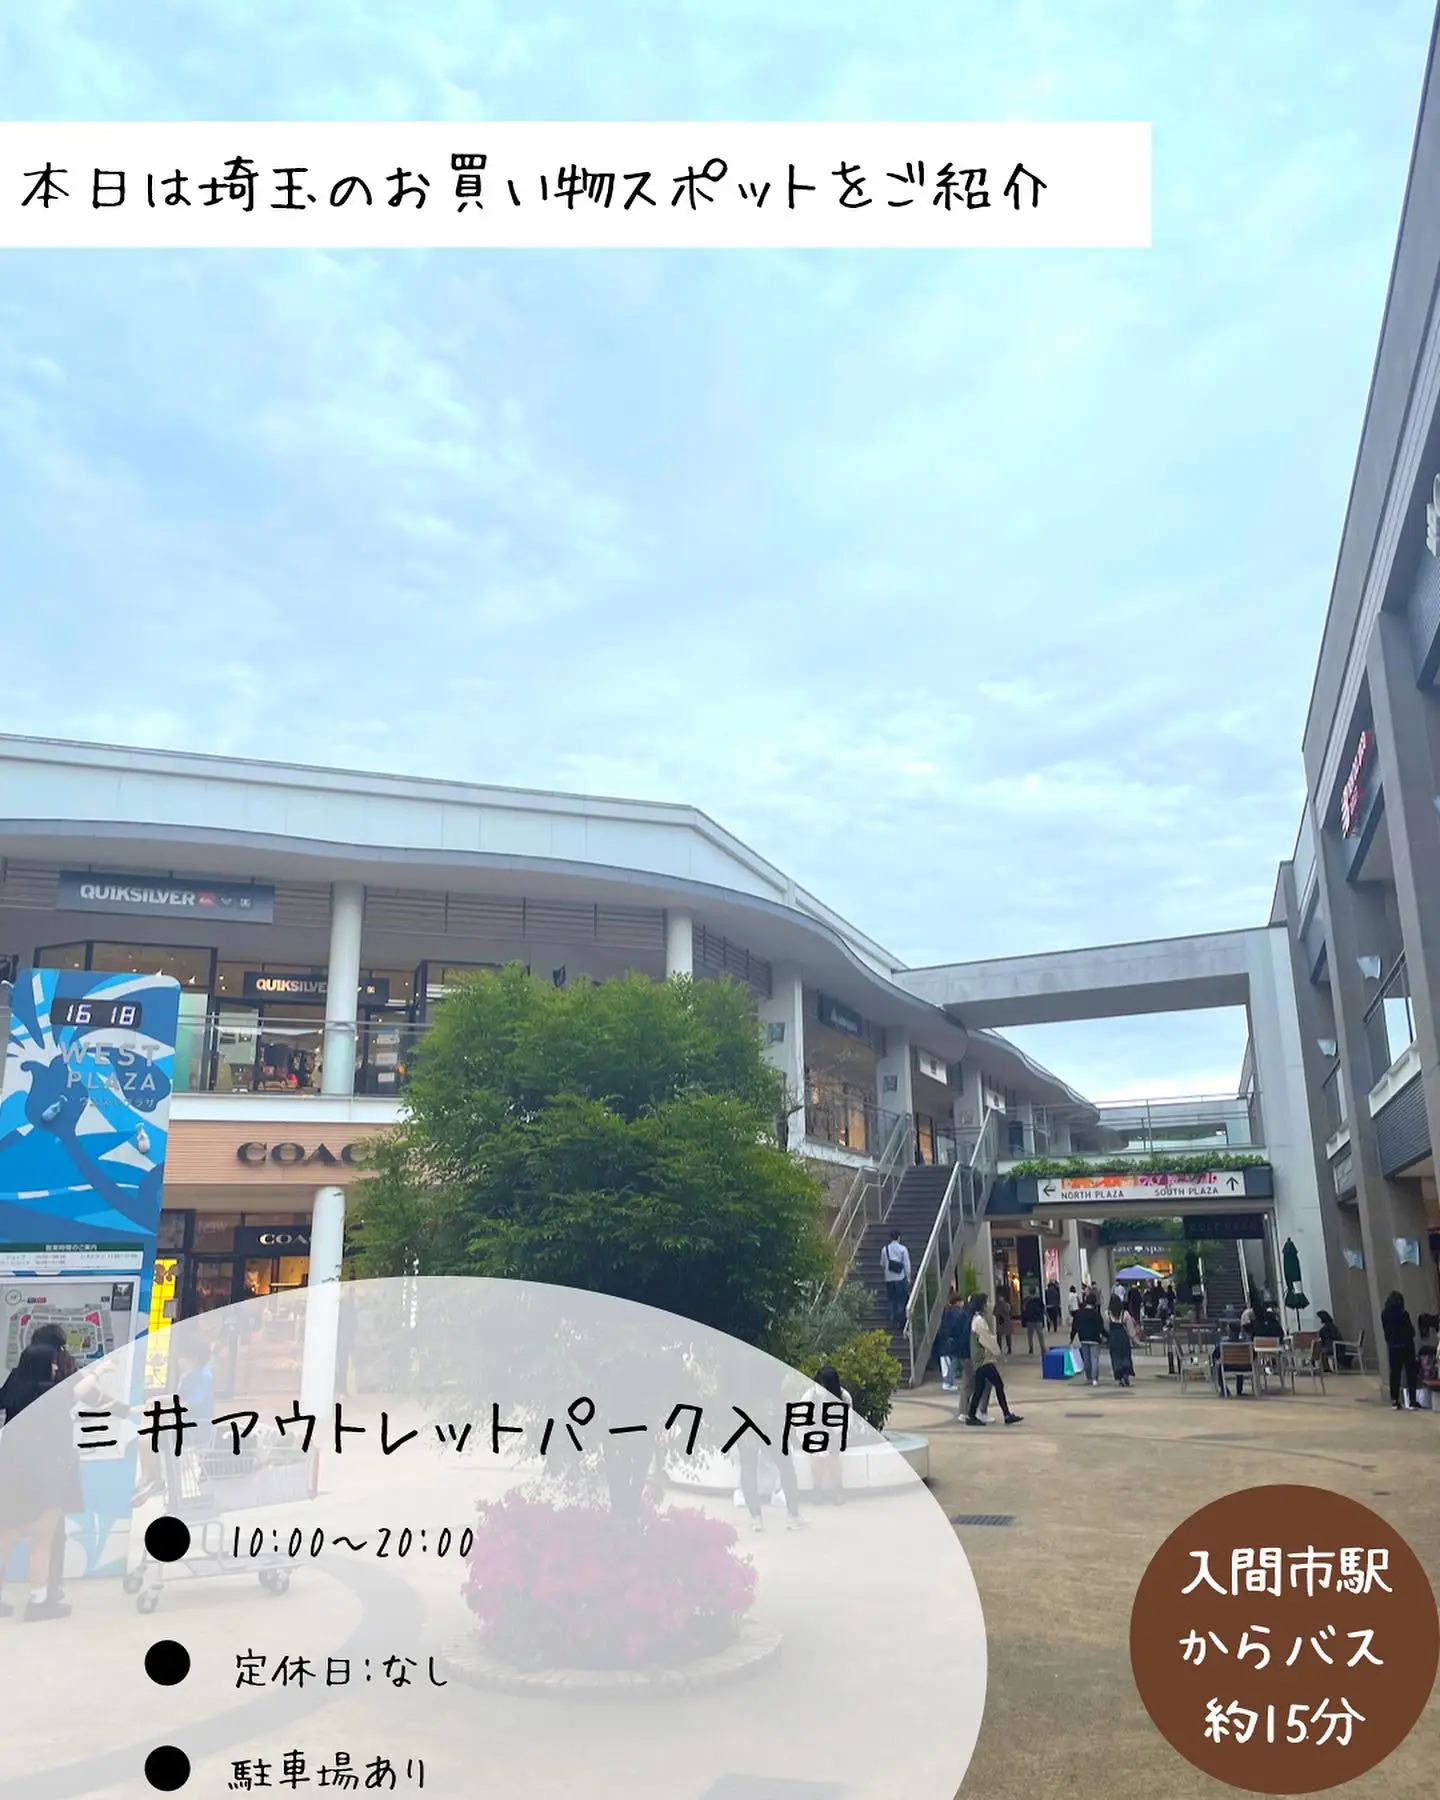 三井アウトレットパーク 多摩南大沢 横浜ベイサイド 1000円×49枚36000円は厳しいですか